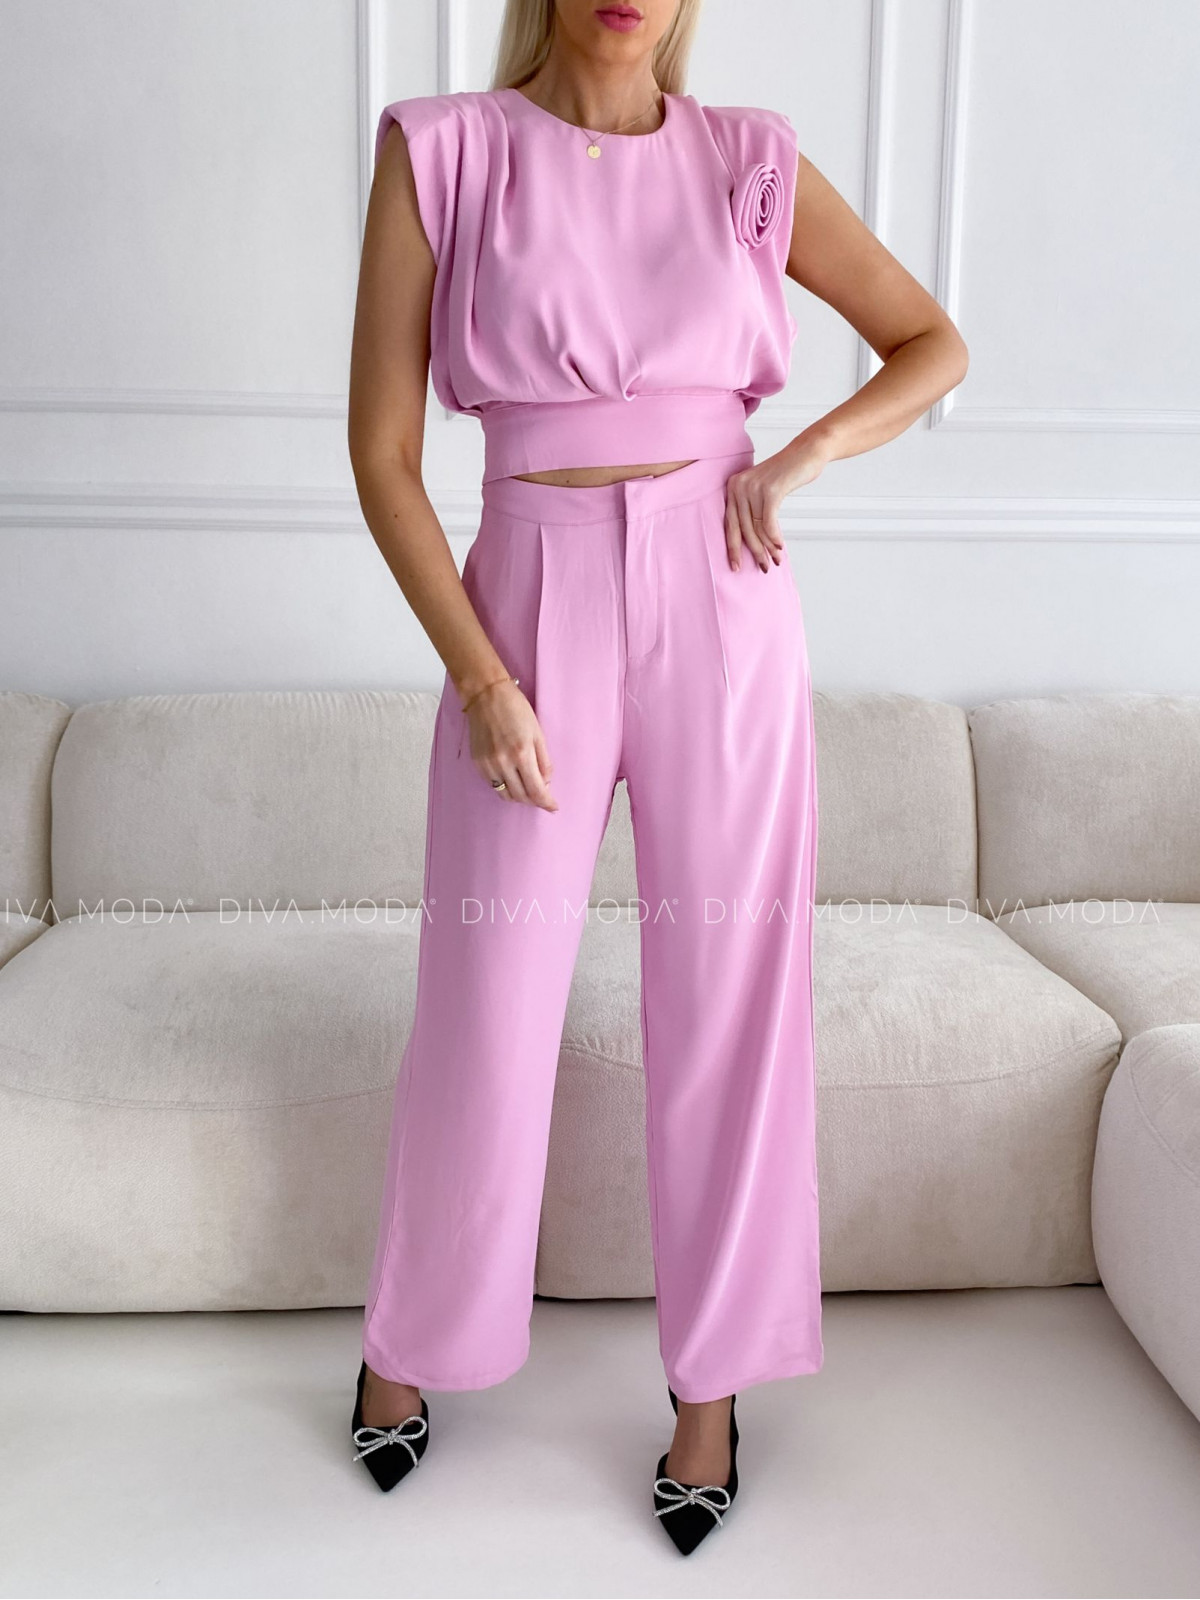 Elegantní komplet kalhoty + top rose růžový P 80